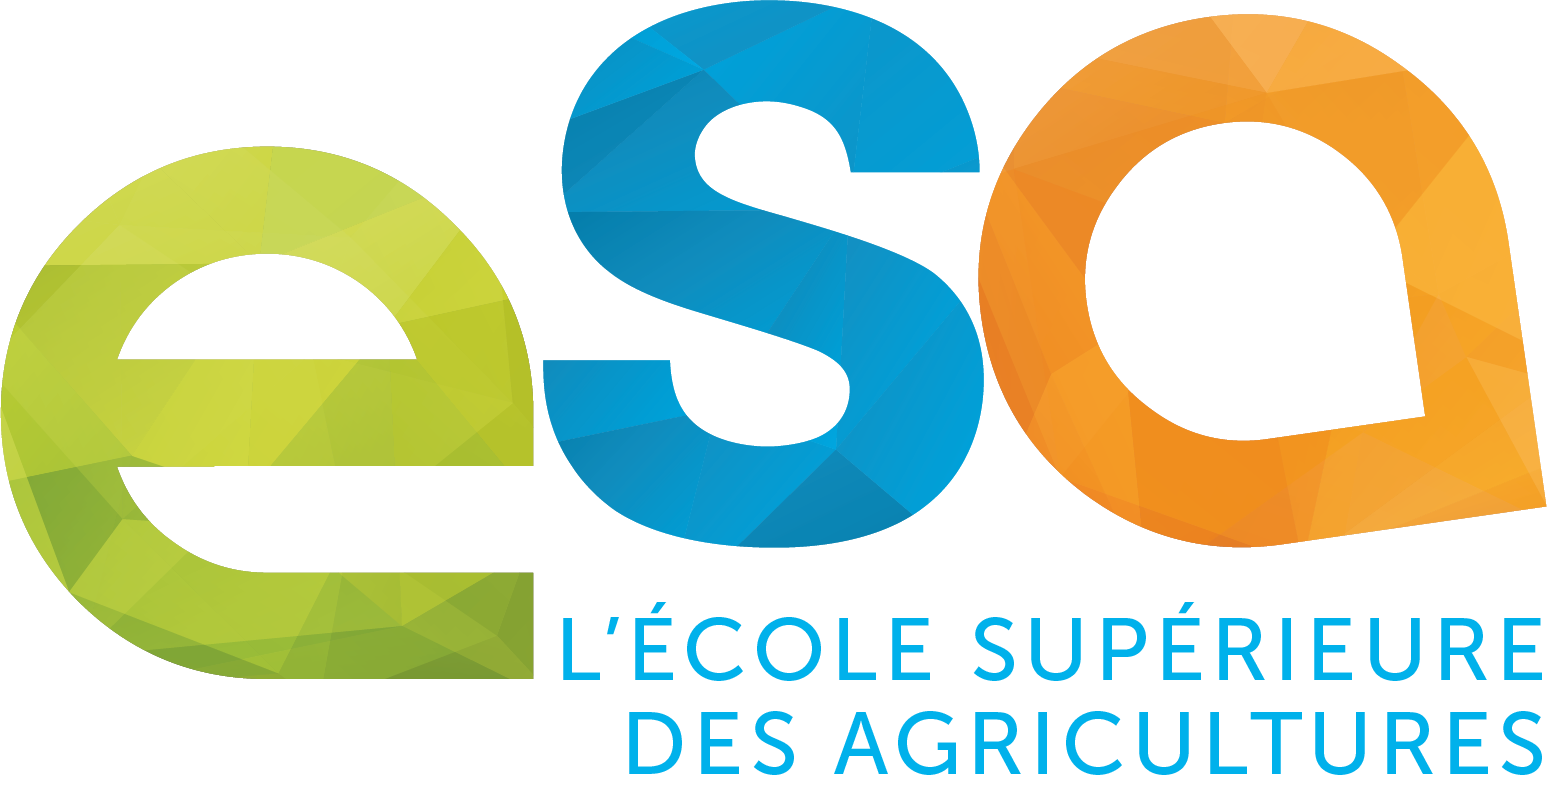 L'ESA, Ecole Supérieure d'Agricultures basée à Angers